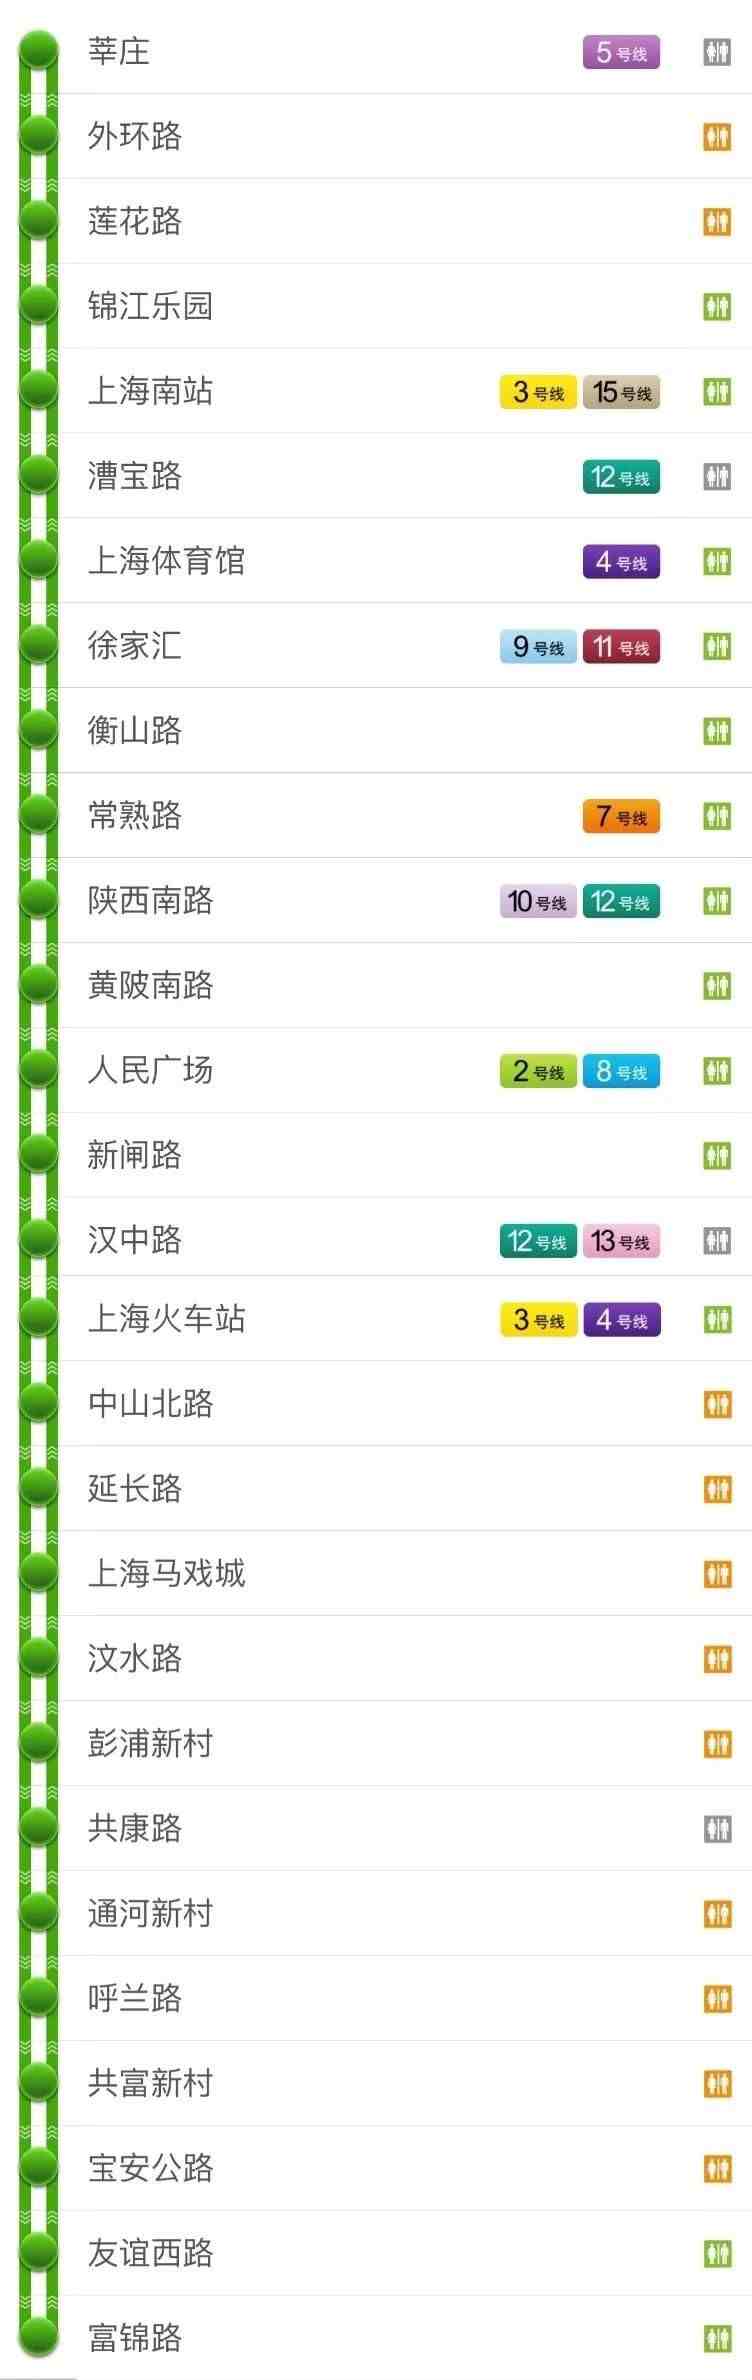 上海地铁线路图 最新|最新版上海地铁全网示意图在此